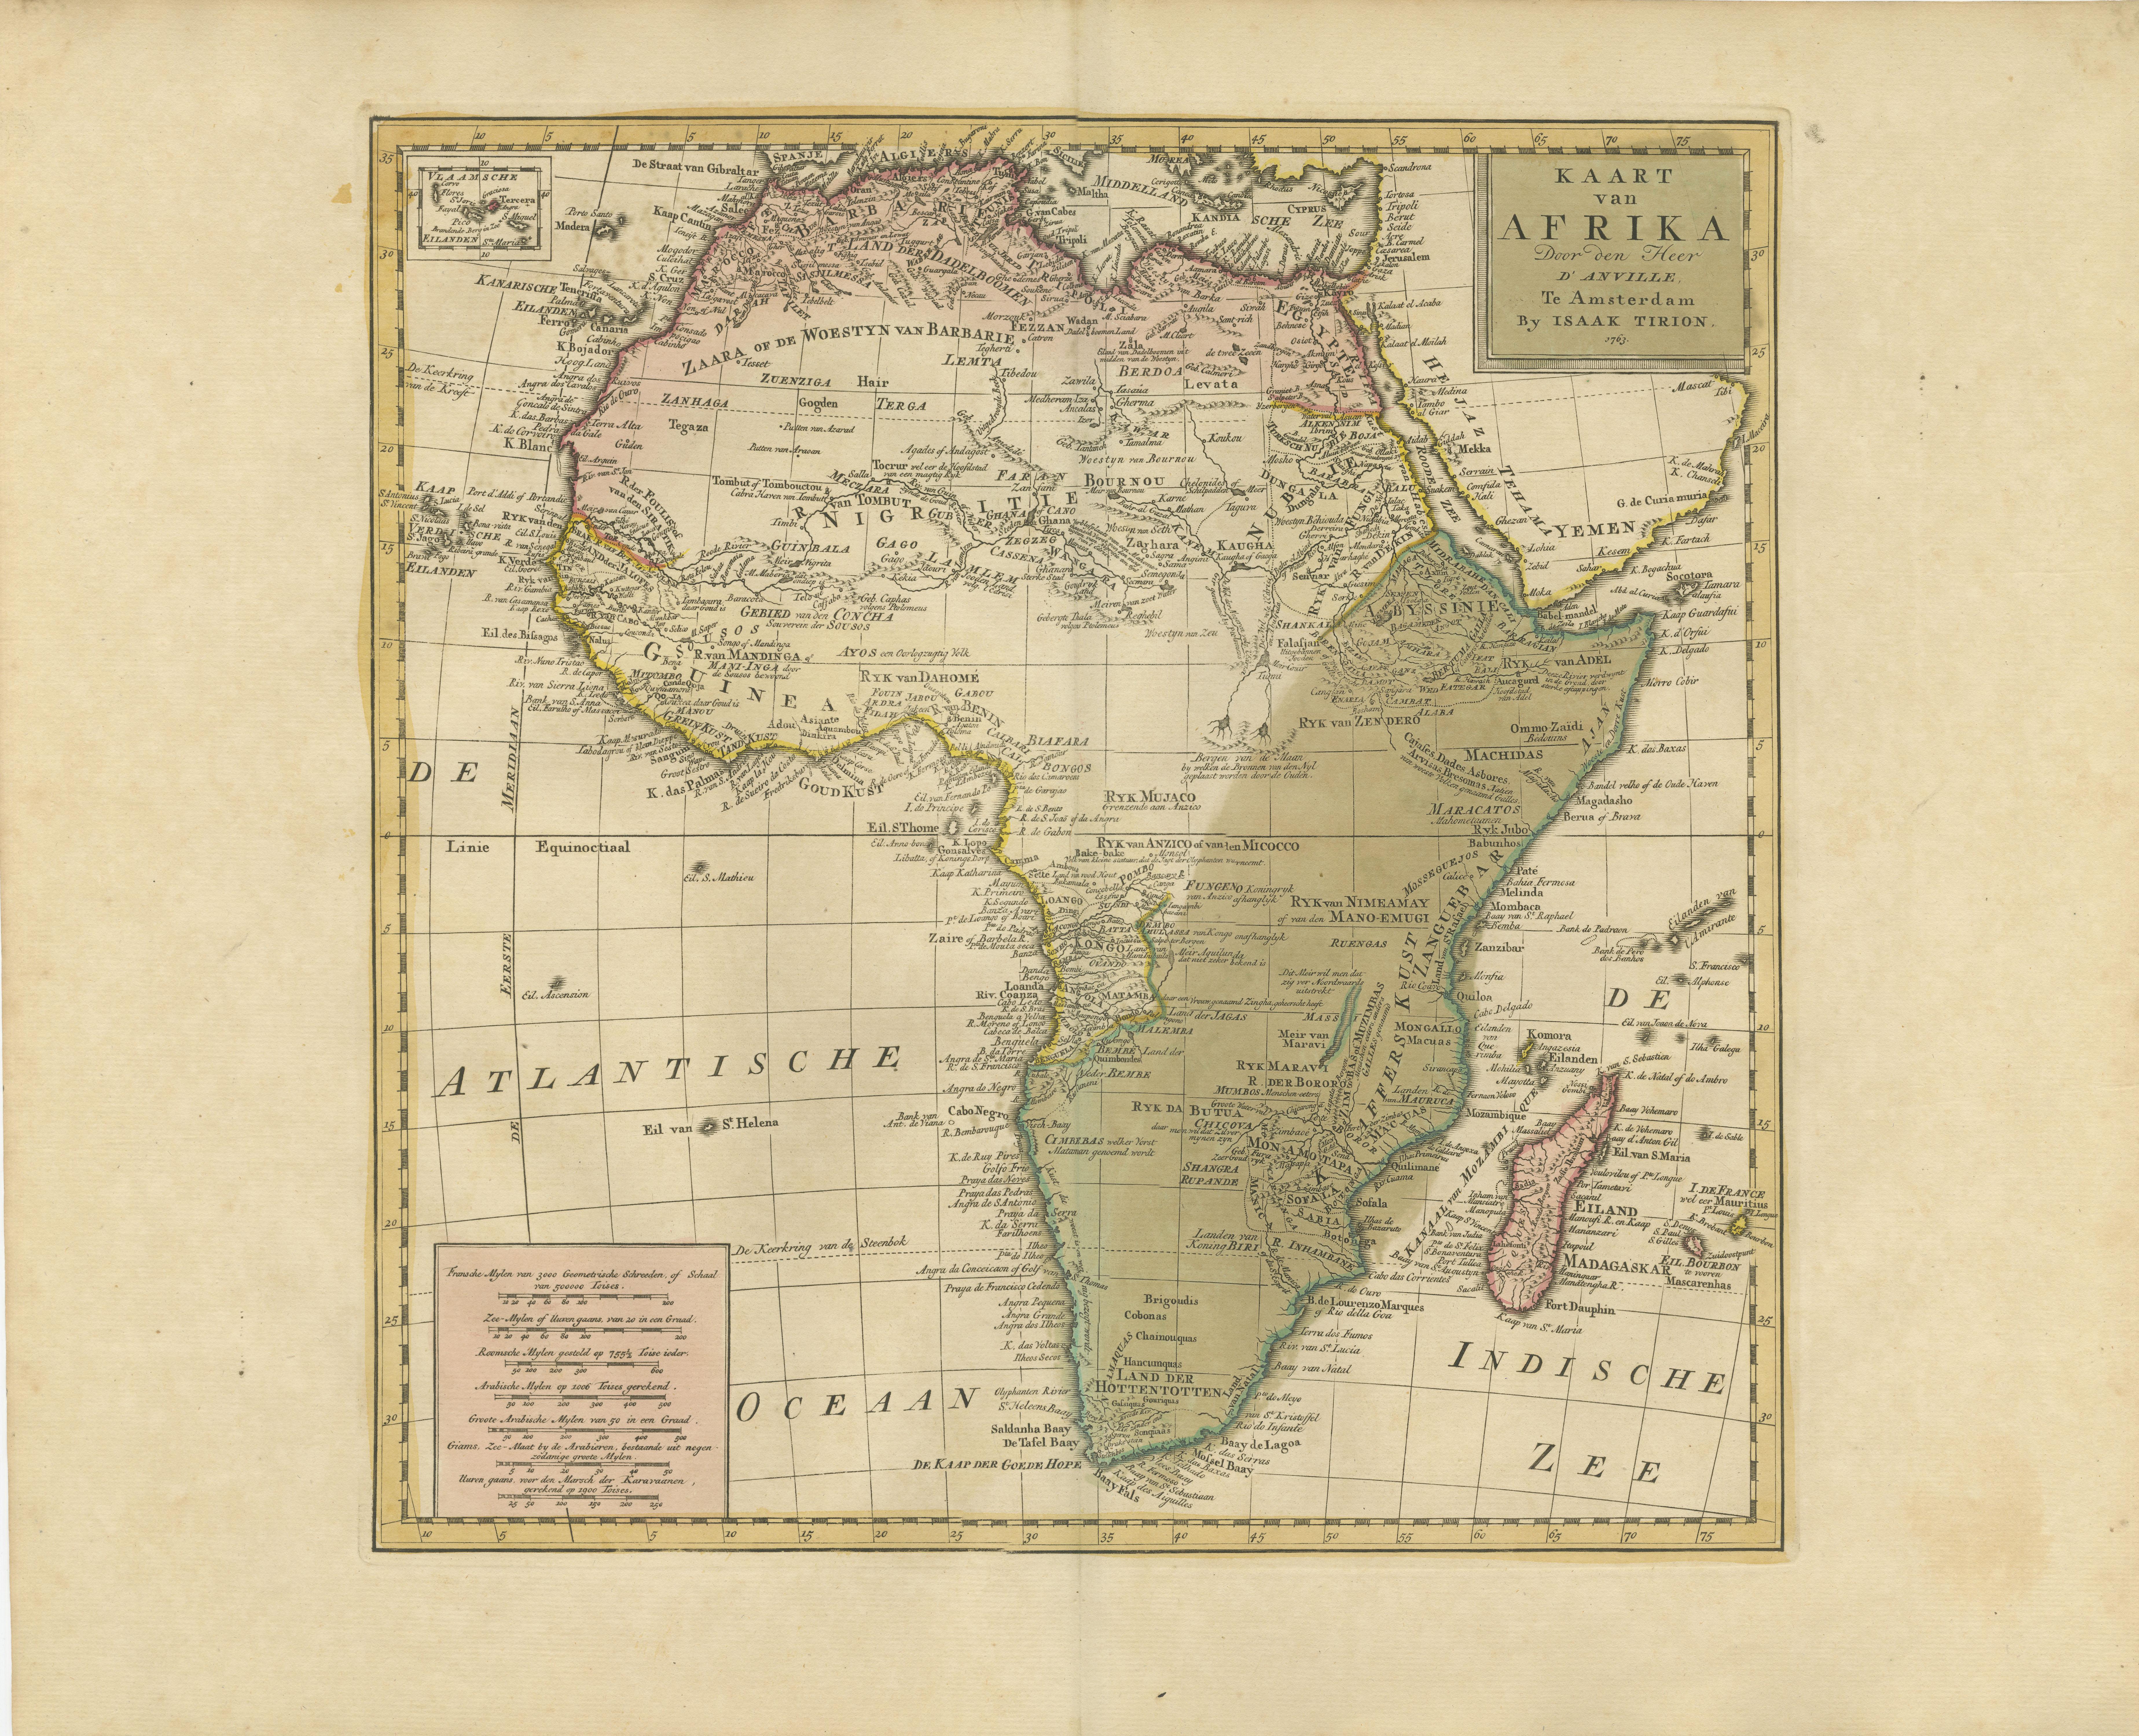 Carte ancienne intitulée 'Kaart van Afrika door den Heer d'Anville'. Carte ancienne détaillée de l'Afrique, avec un très petit encart intitulé 